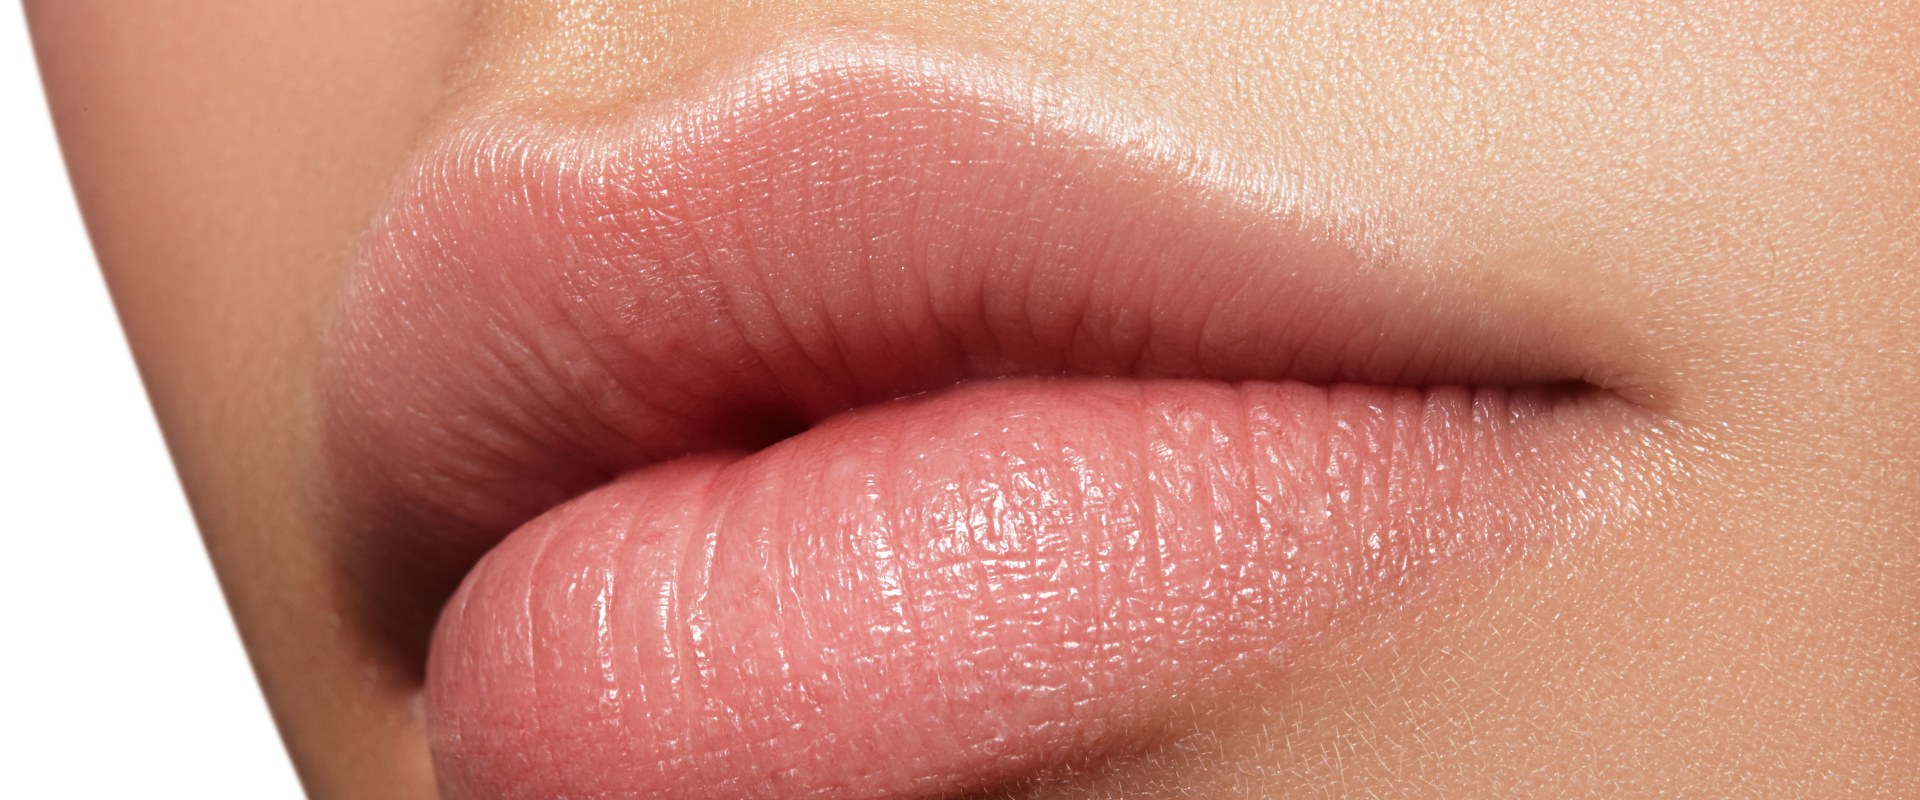 Cuánto dura la recuperacion de aumento de labios?